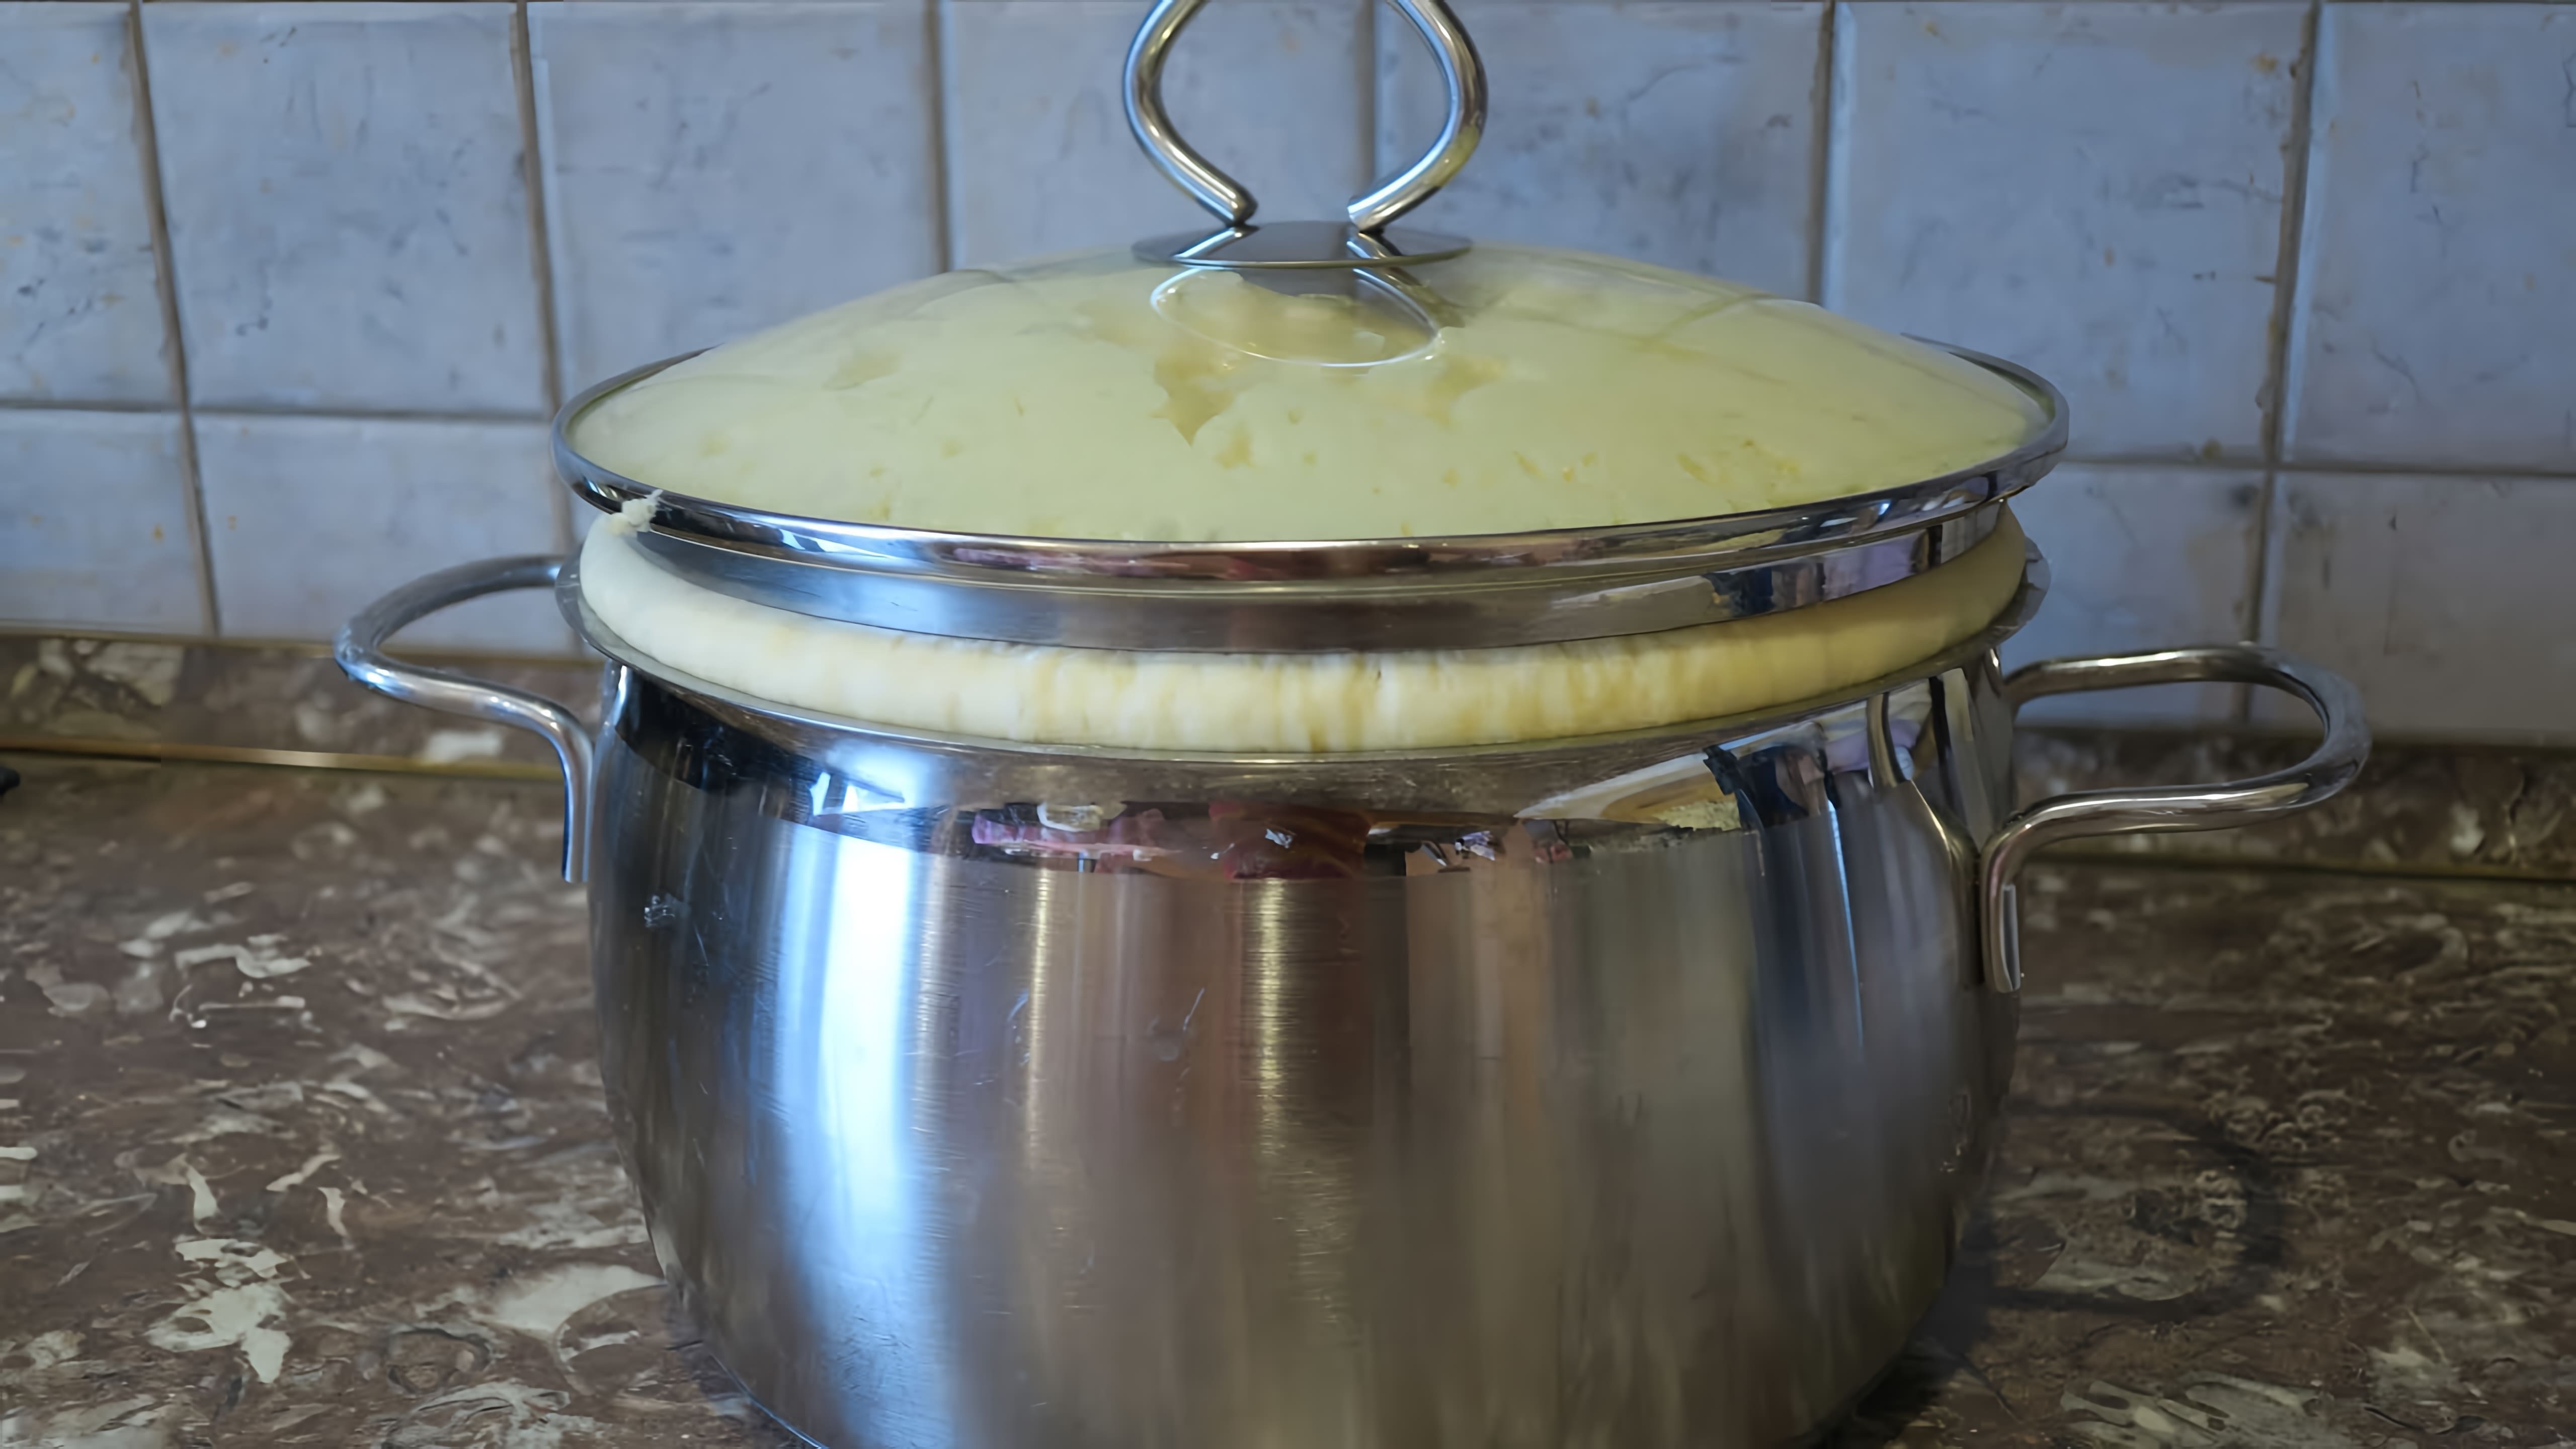 В этом видео демонстрируется процесс приготовления теста для пирогов по бабушкиному рецепту